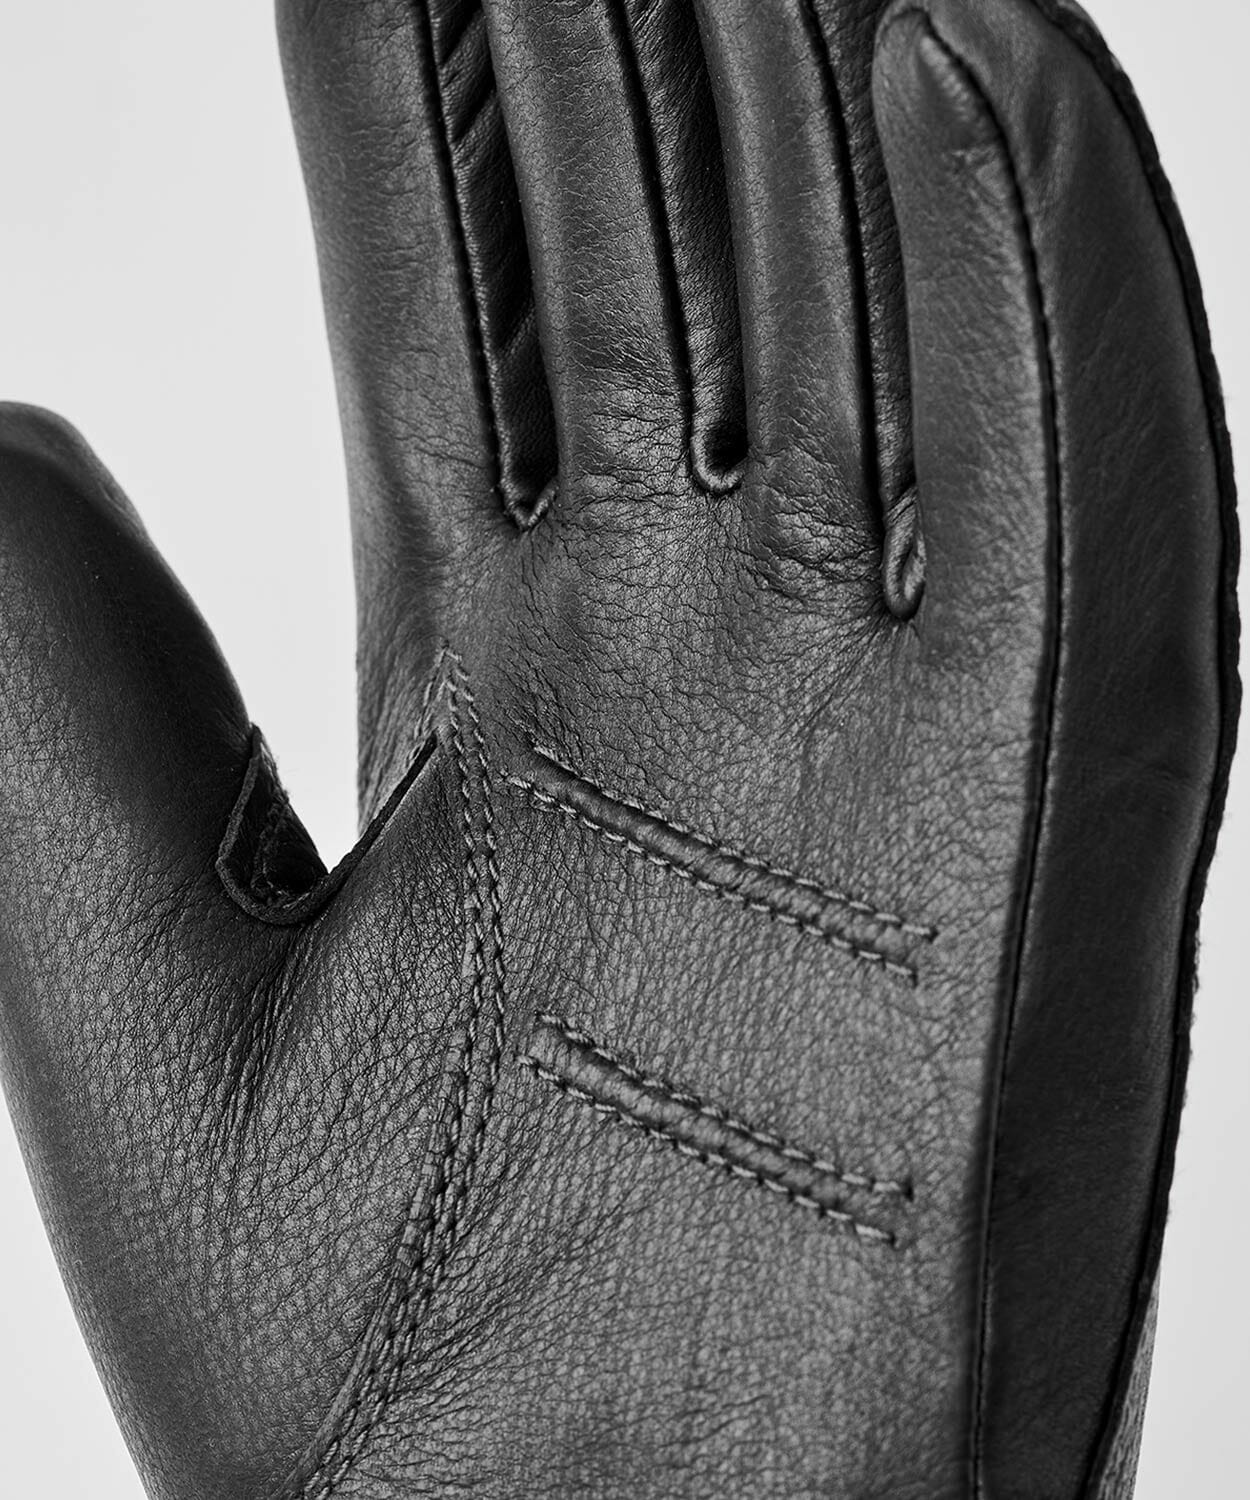 Deerskin Primaloft Glove Gloves Hestra 